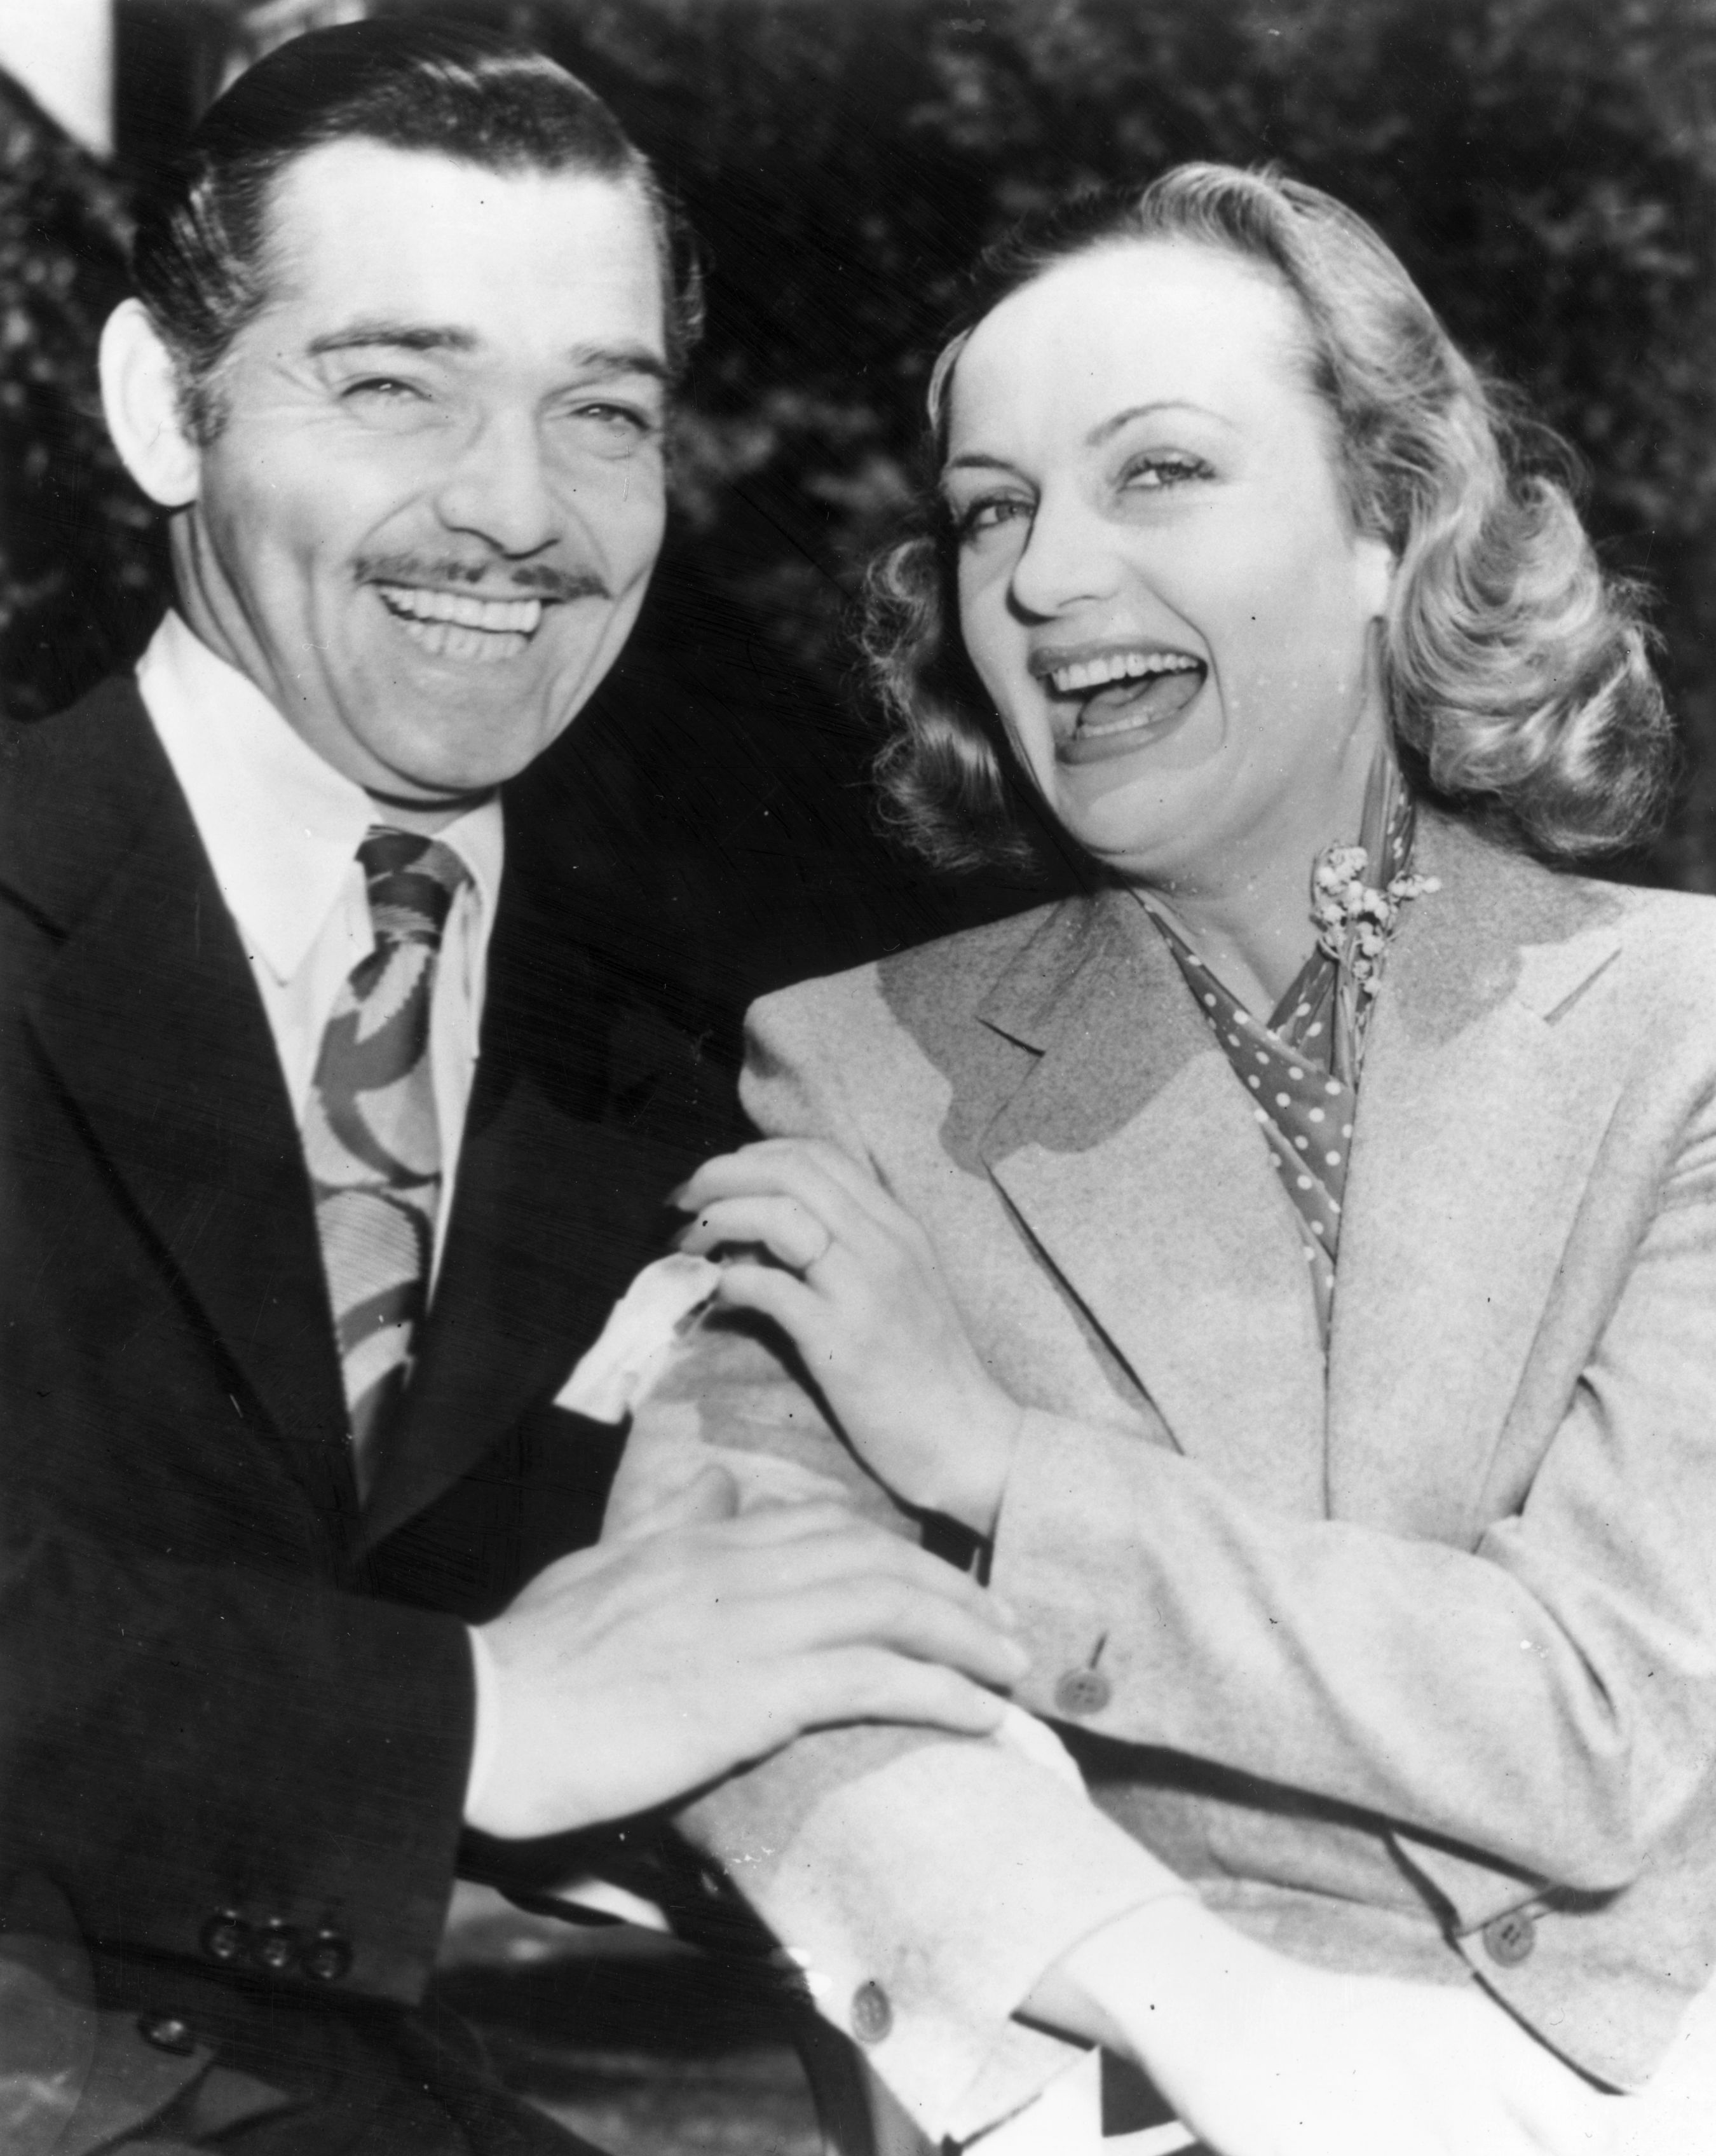 Il matrimonio con Carol Lombard nel 1939